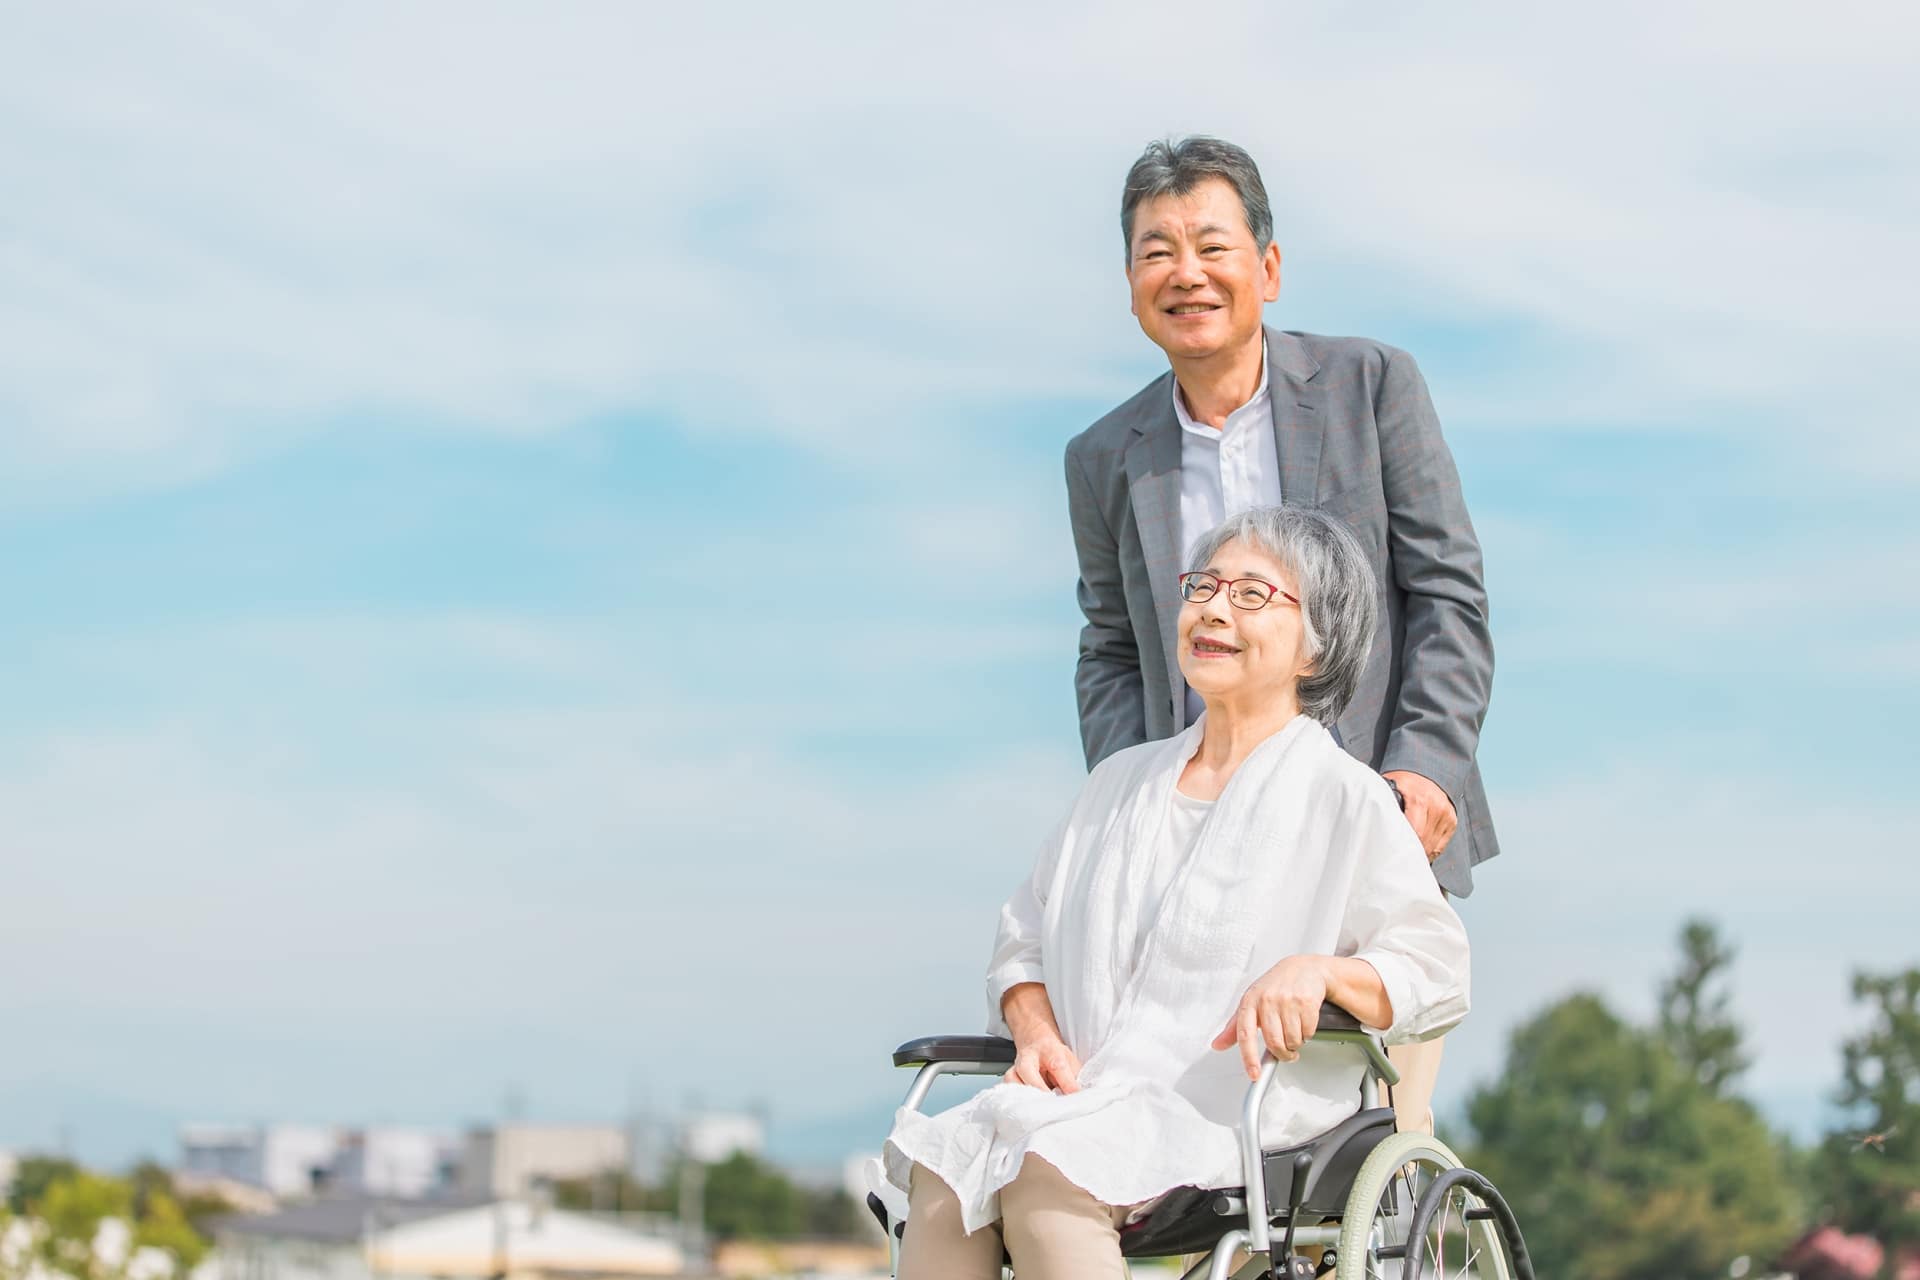 高齢女性が乗った車いすを高齢男性が押して笑顔で散歩する写真です。